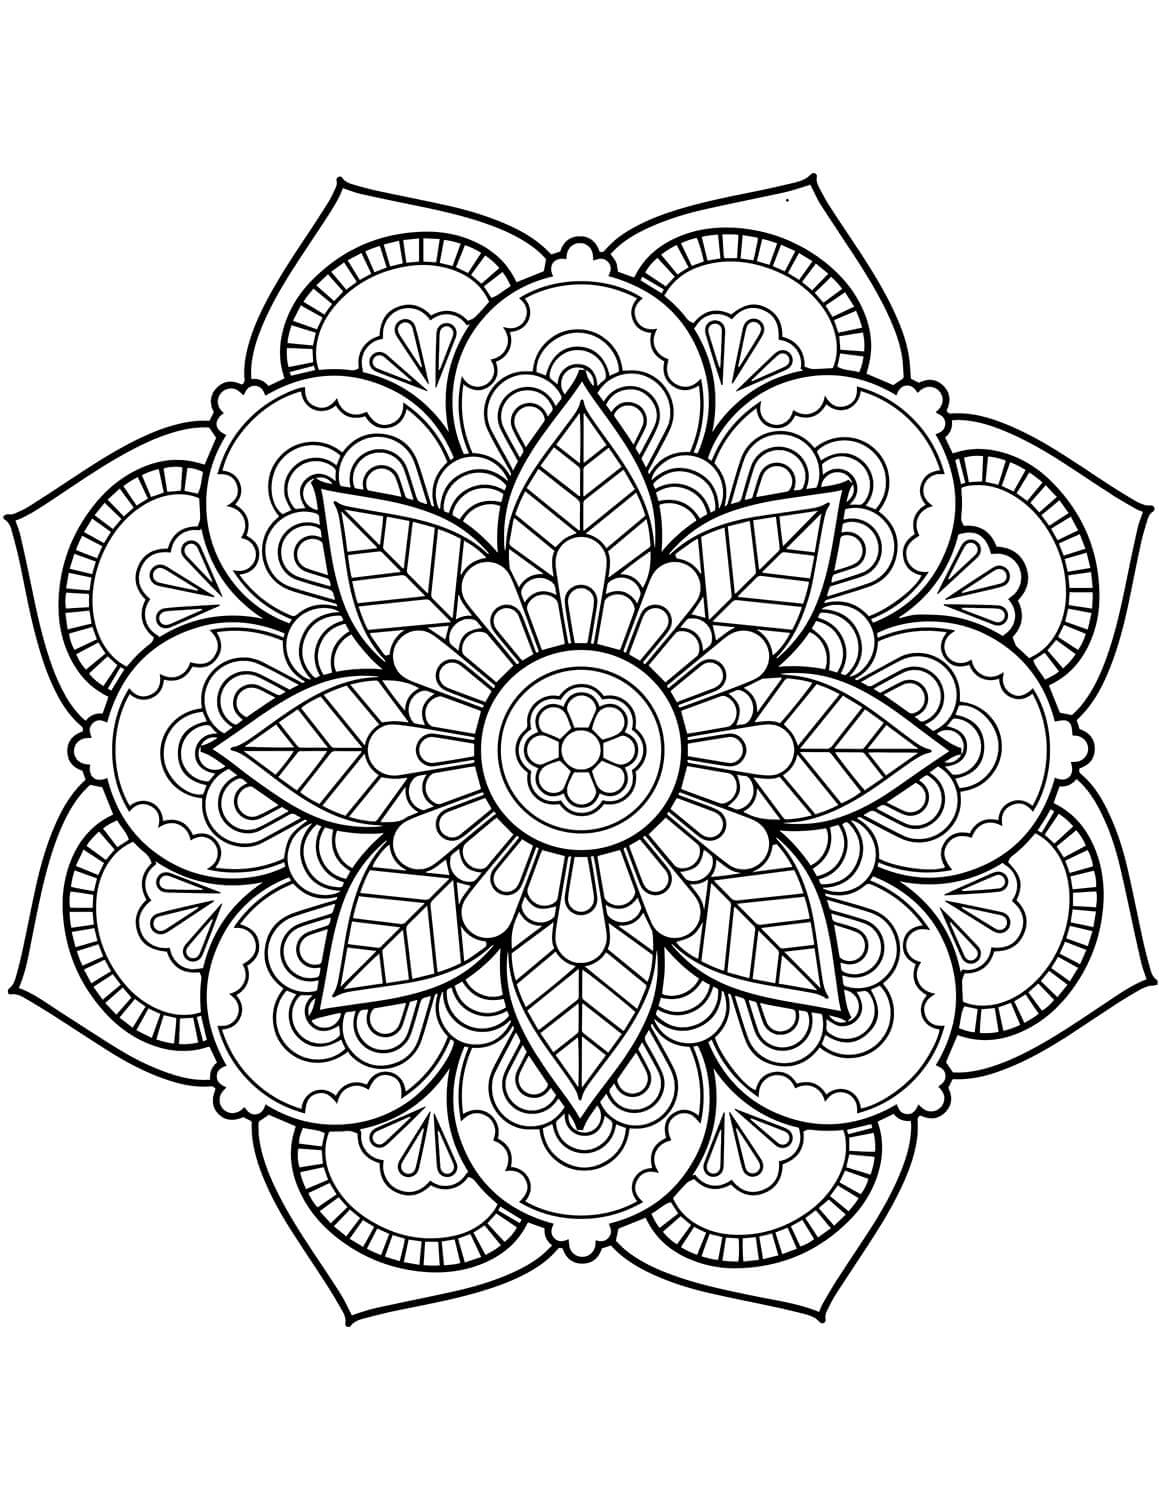 Mandala de Fleurs Pour Adultes coloring page